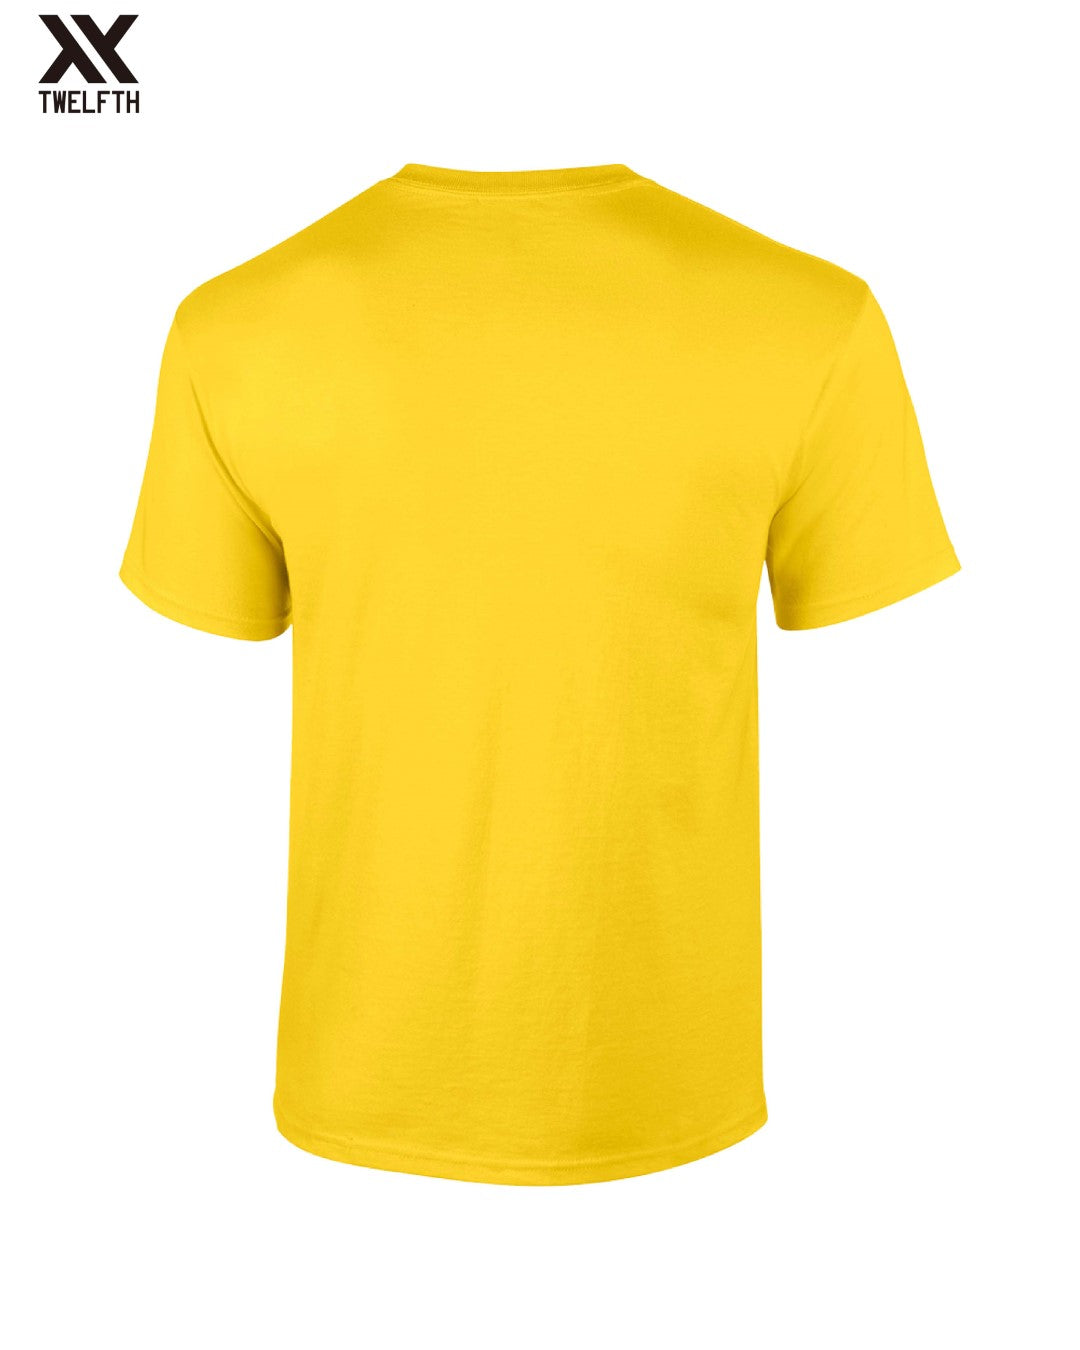 Ecuador Crest T-Shirt - Mens